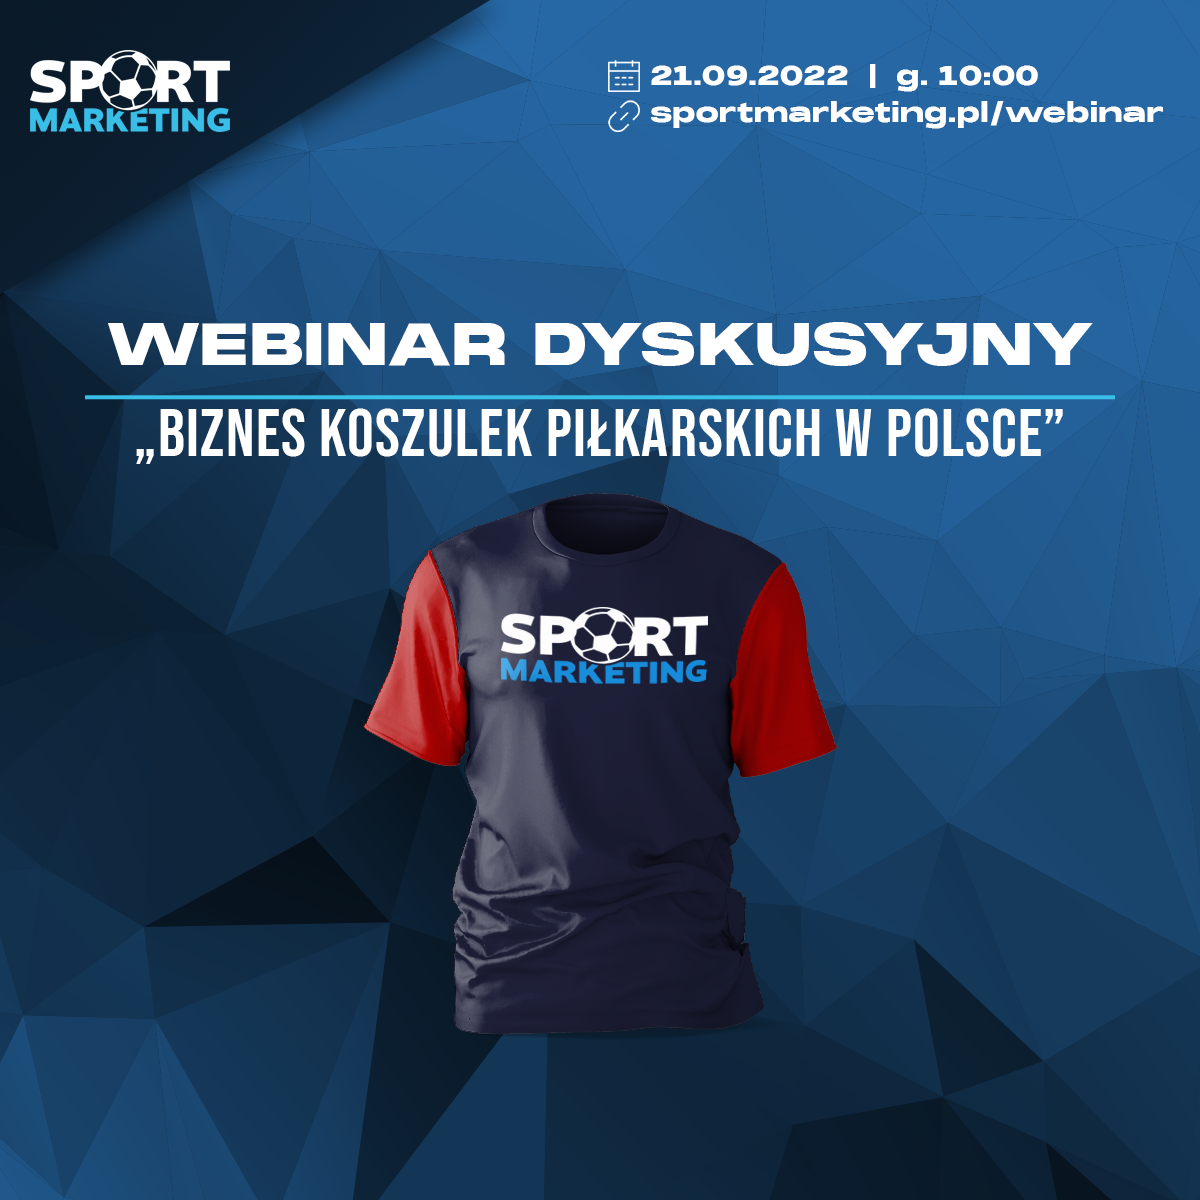 Sportmarketing organizuje webinar „Biznes koszulek piłkarskich w Polsce”